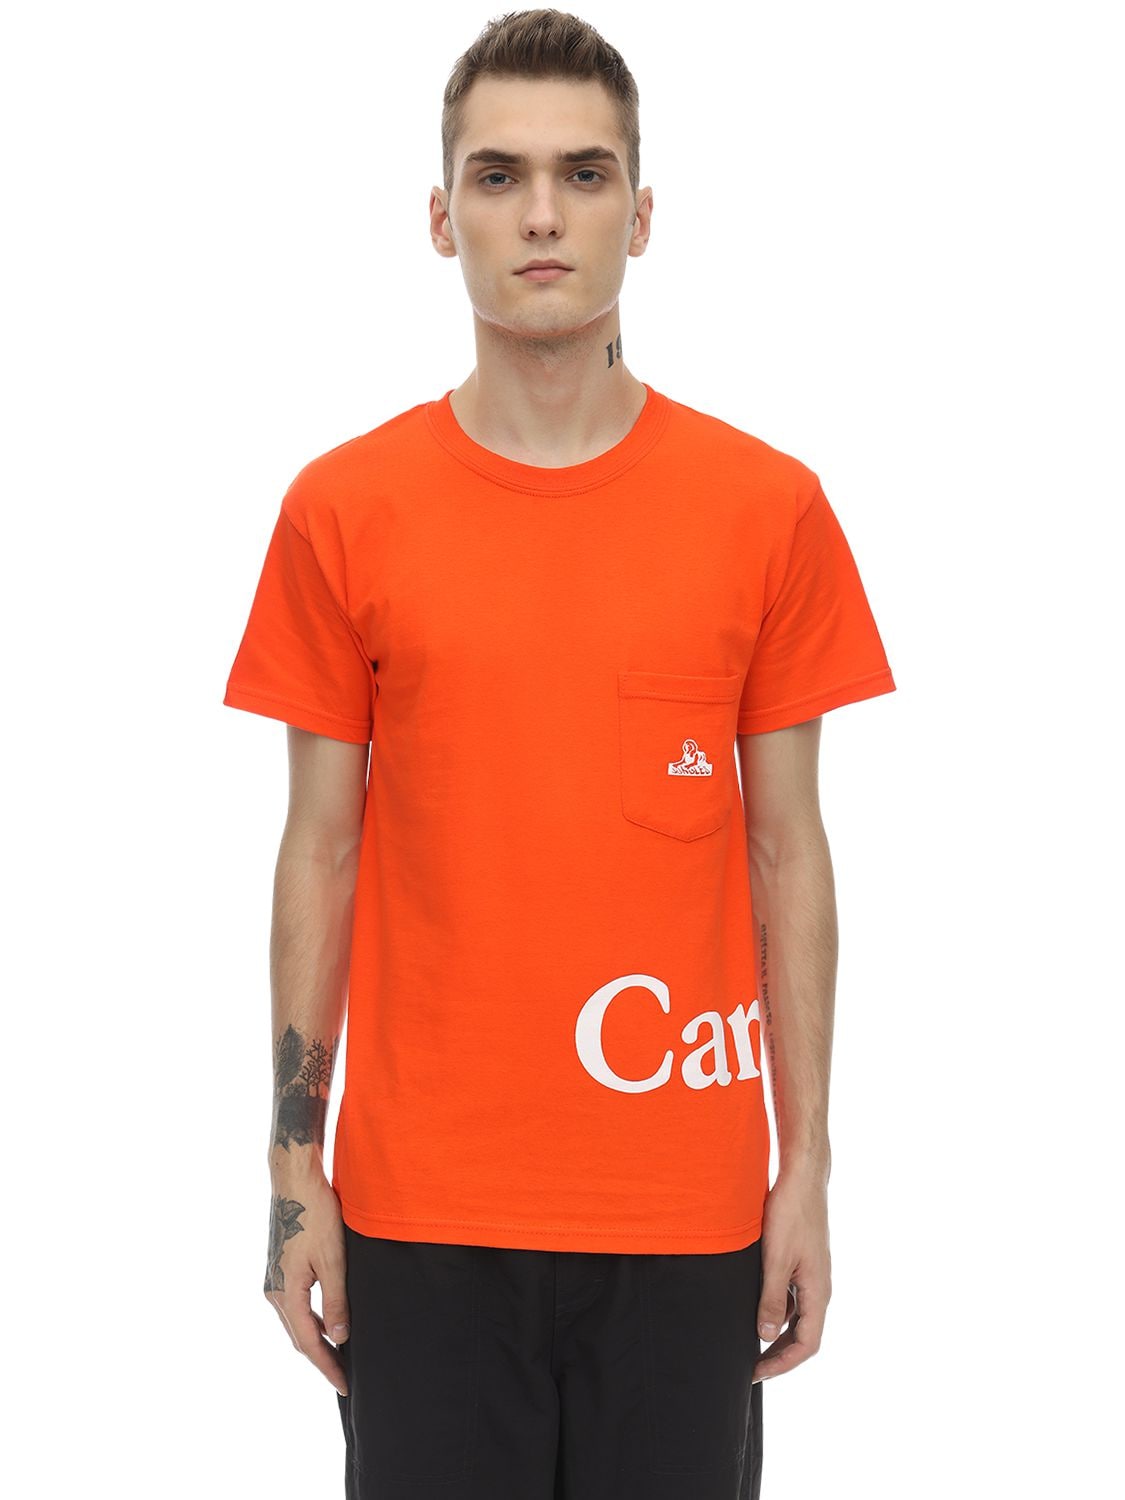 Carrots X Jungles Cotton Jersey T-shirt